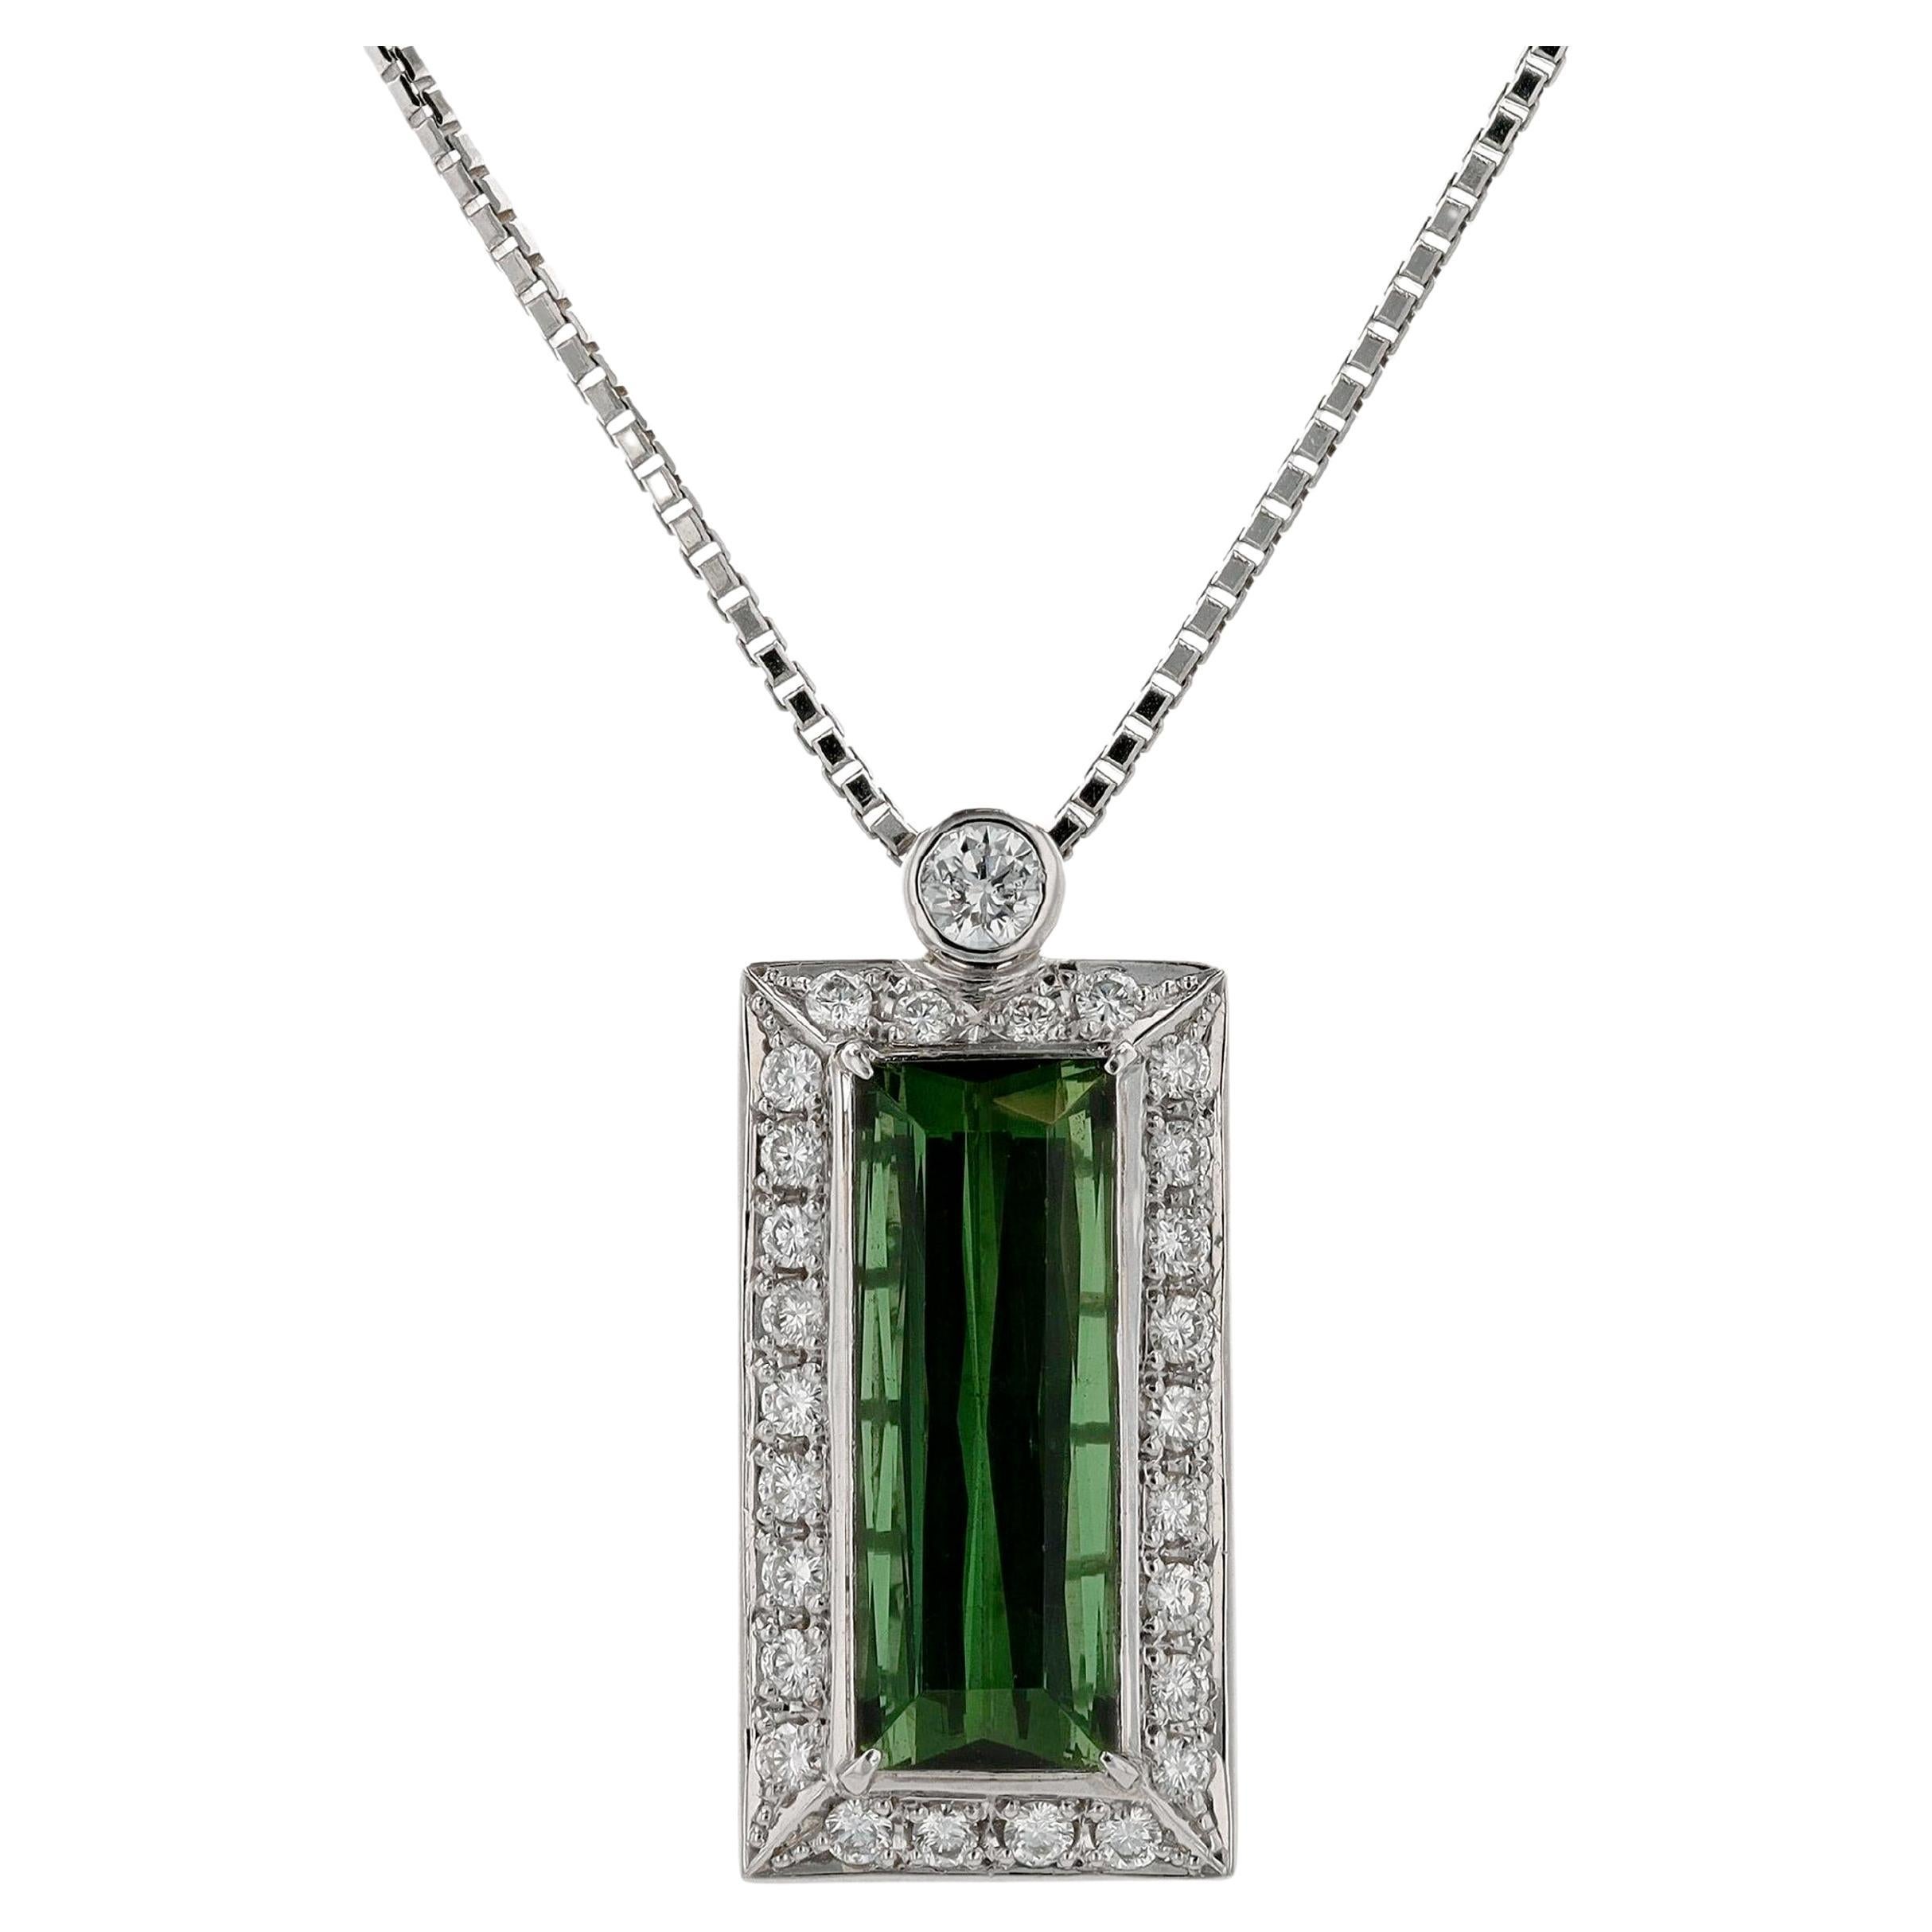 Collier pendentif moderne en diamants et tourmaline verte taille émeraude de 6 carats